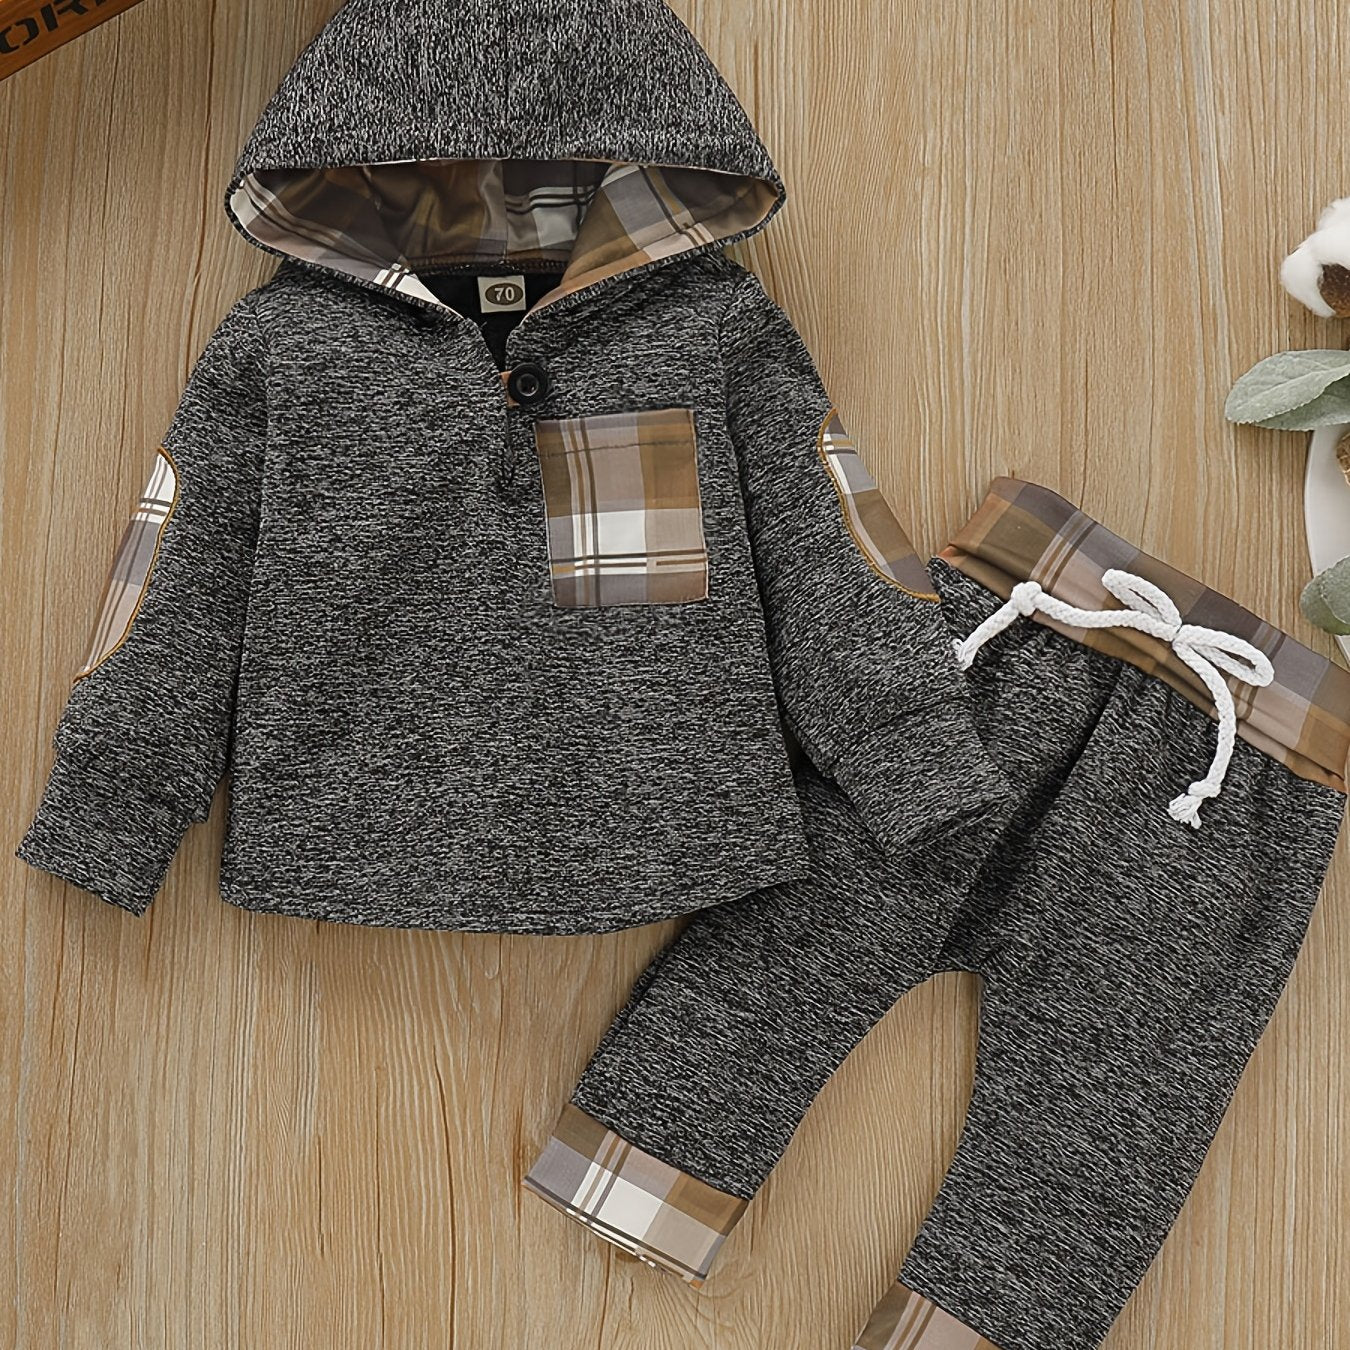 2pcs Baby Boys Plaid Printed Hoodies Winter Sweatshirt & Contrast Trim Sets